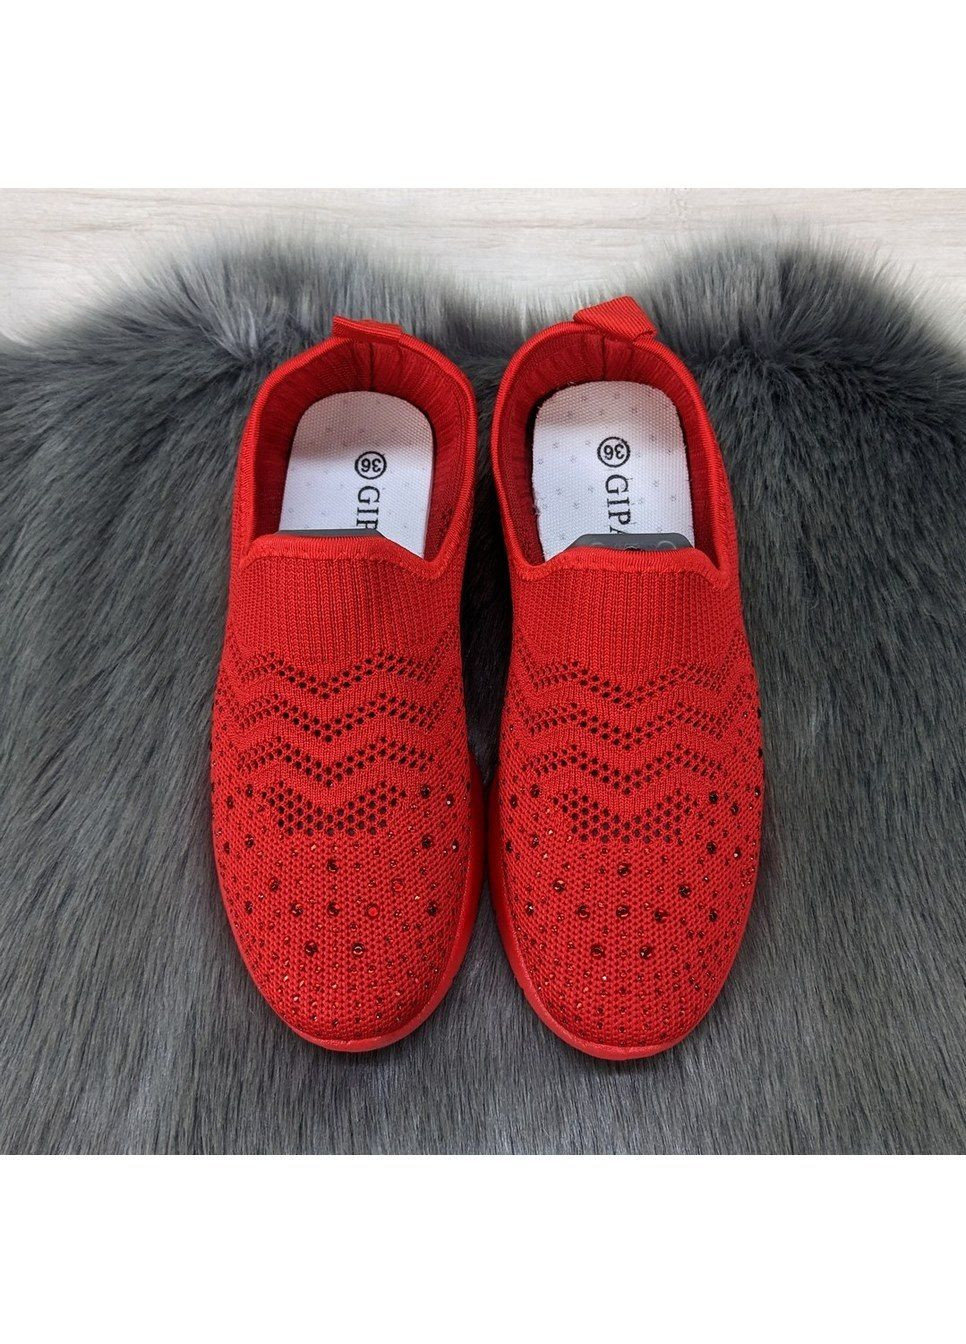 Красные летние кроссовки женские текстильные без шнурков Gipanis